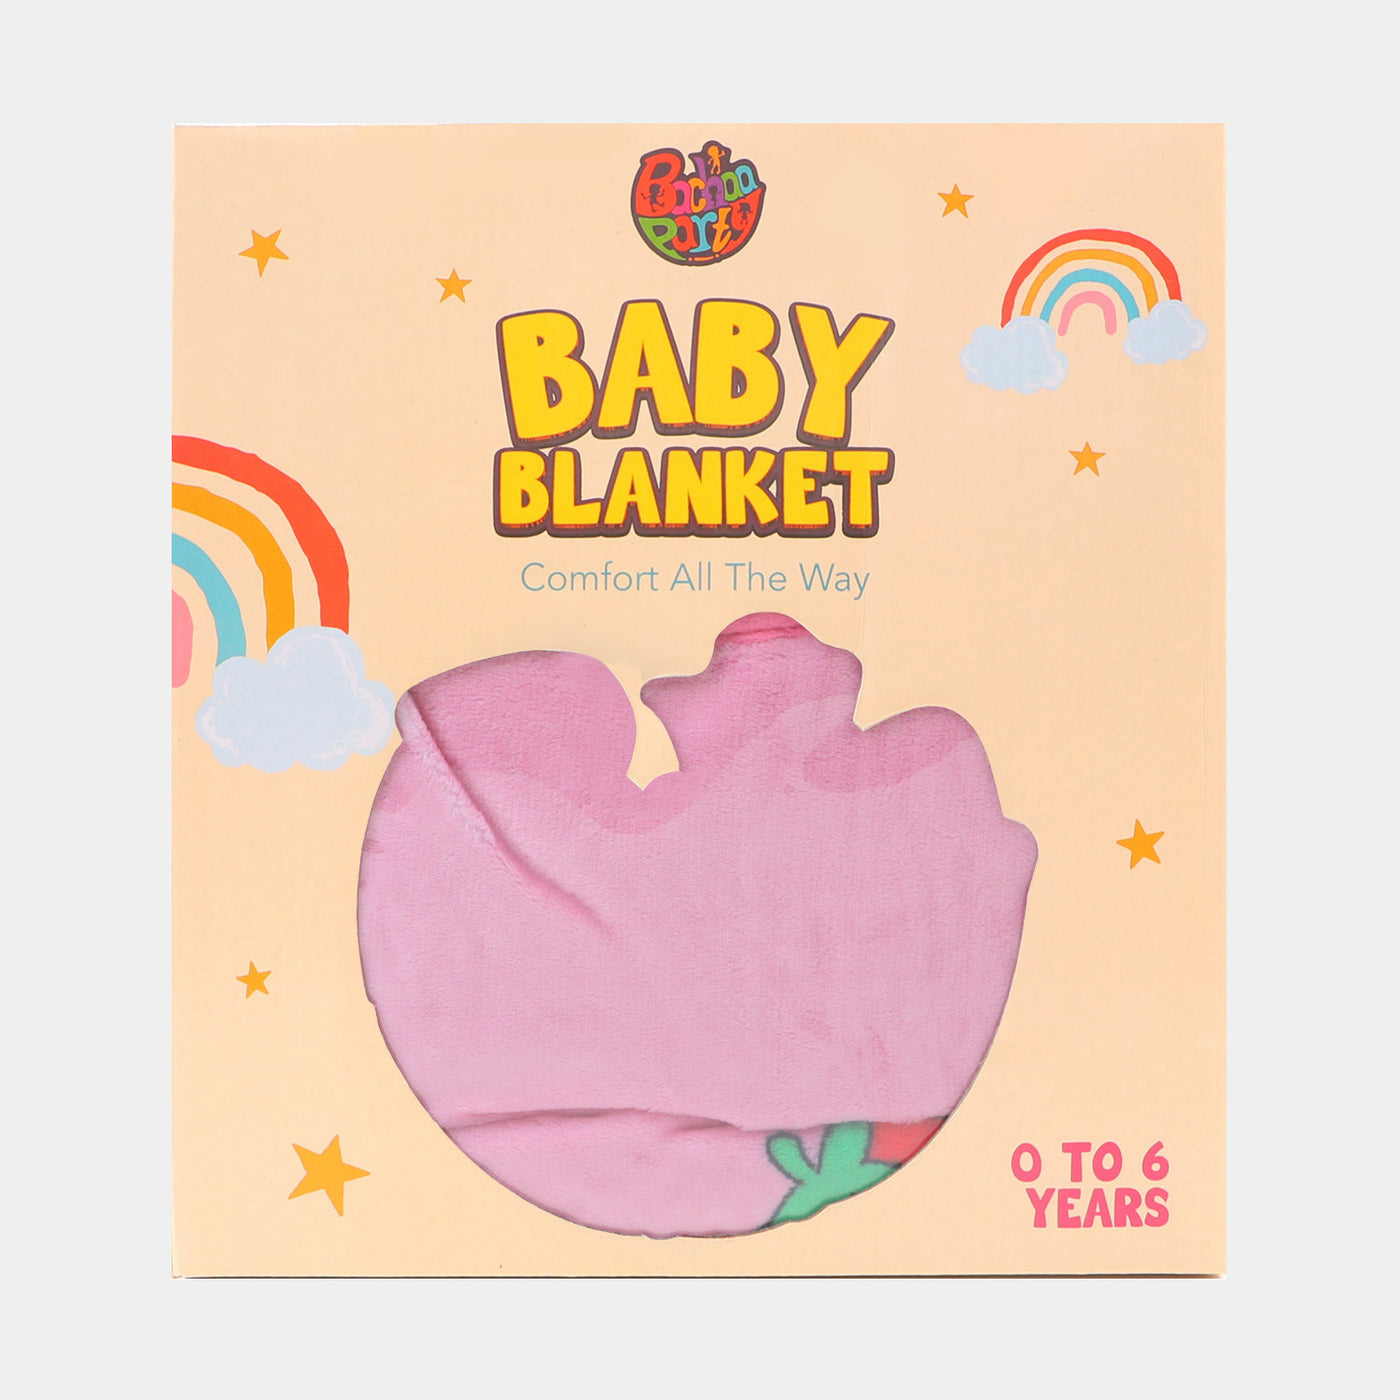 Baby Blanket Soft & Comfort